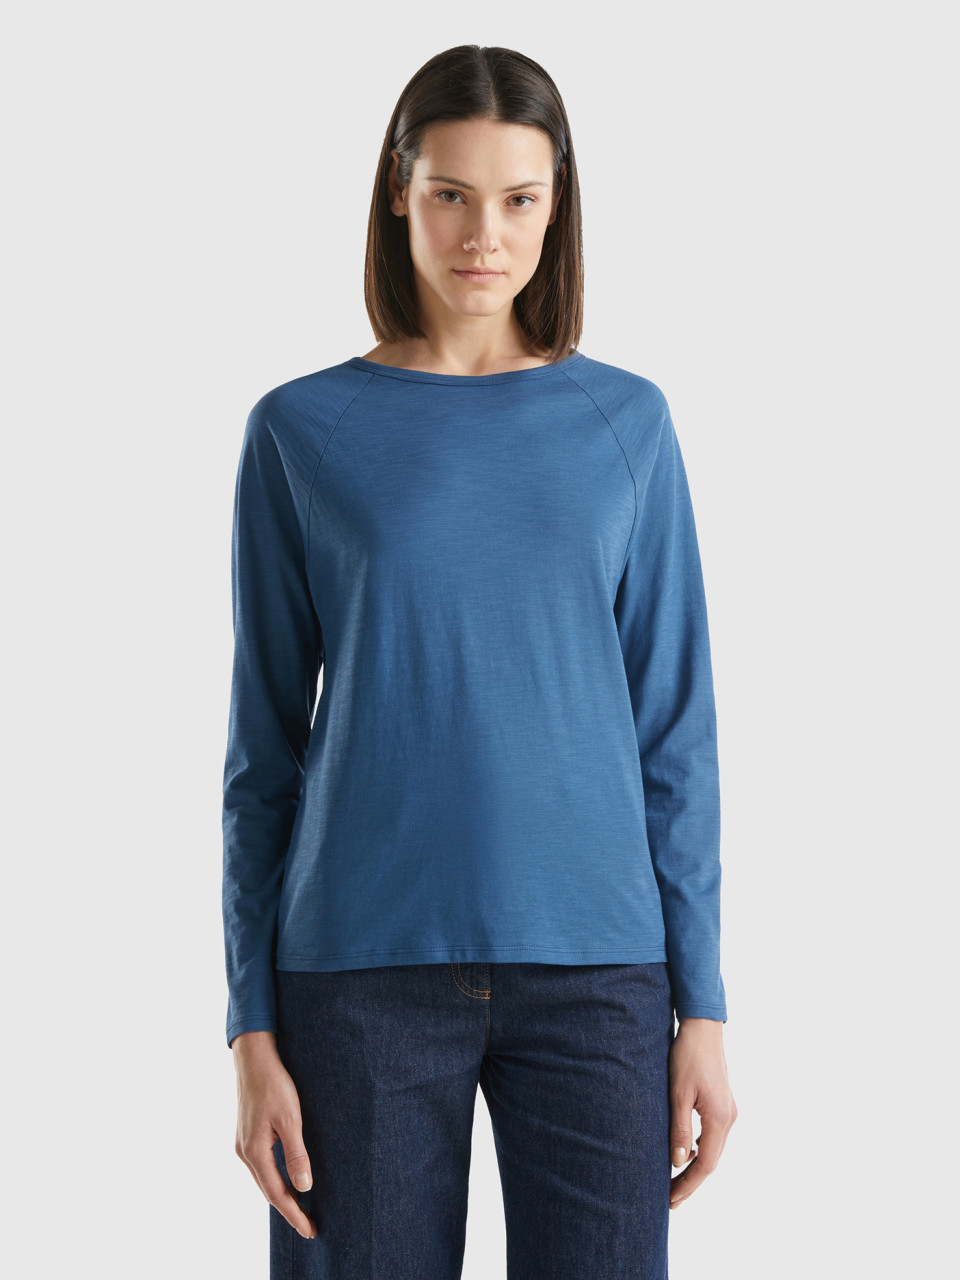 Benetton, Long Sleeve T-shirt In Light Cotton, Air Force Blue, Women